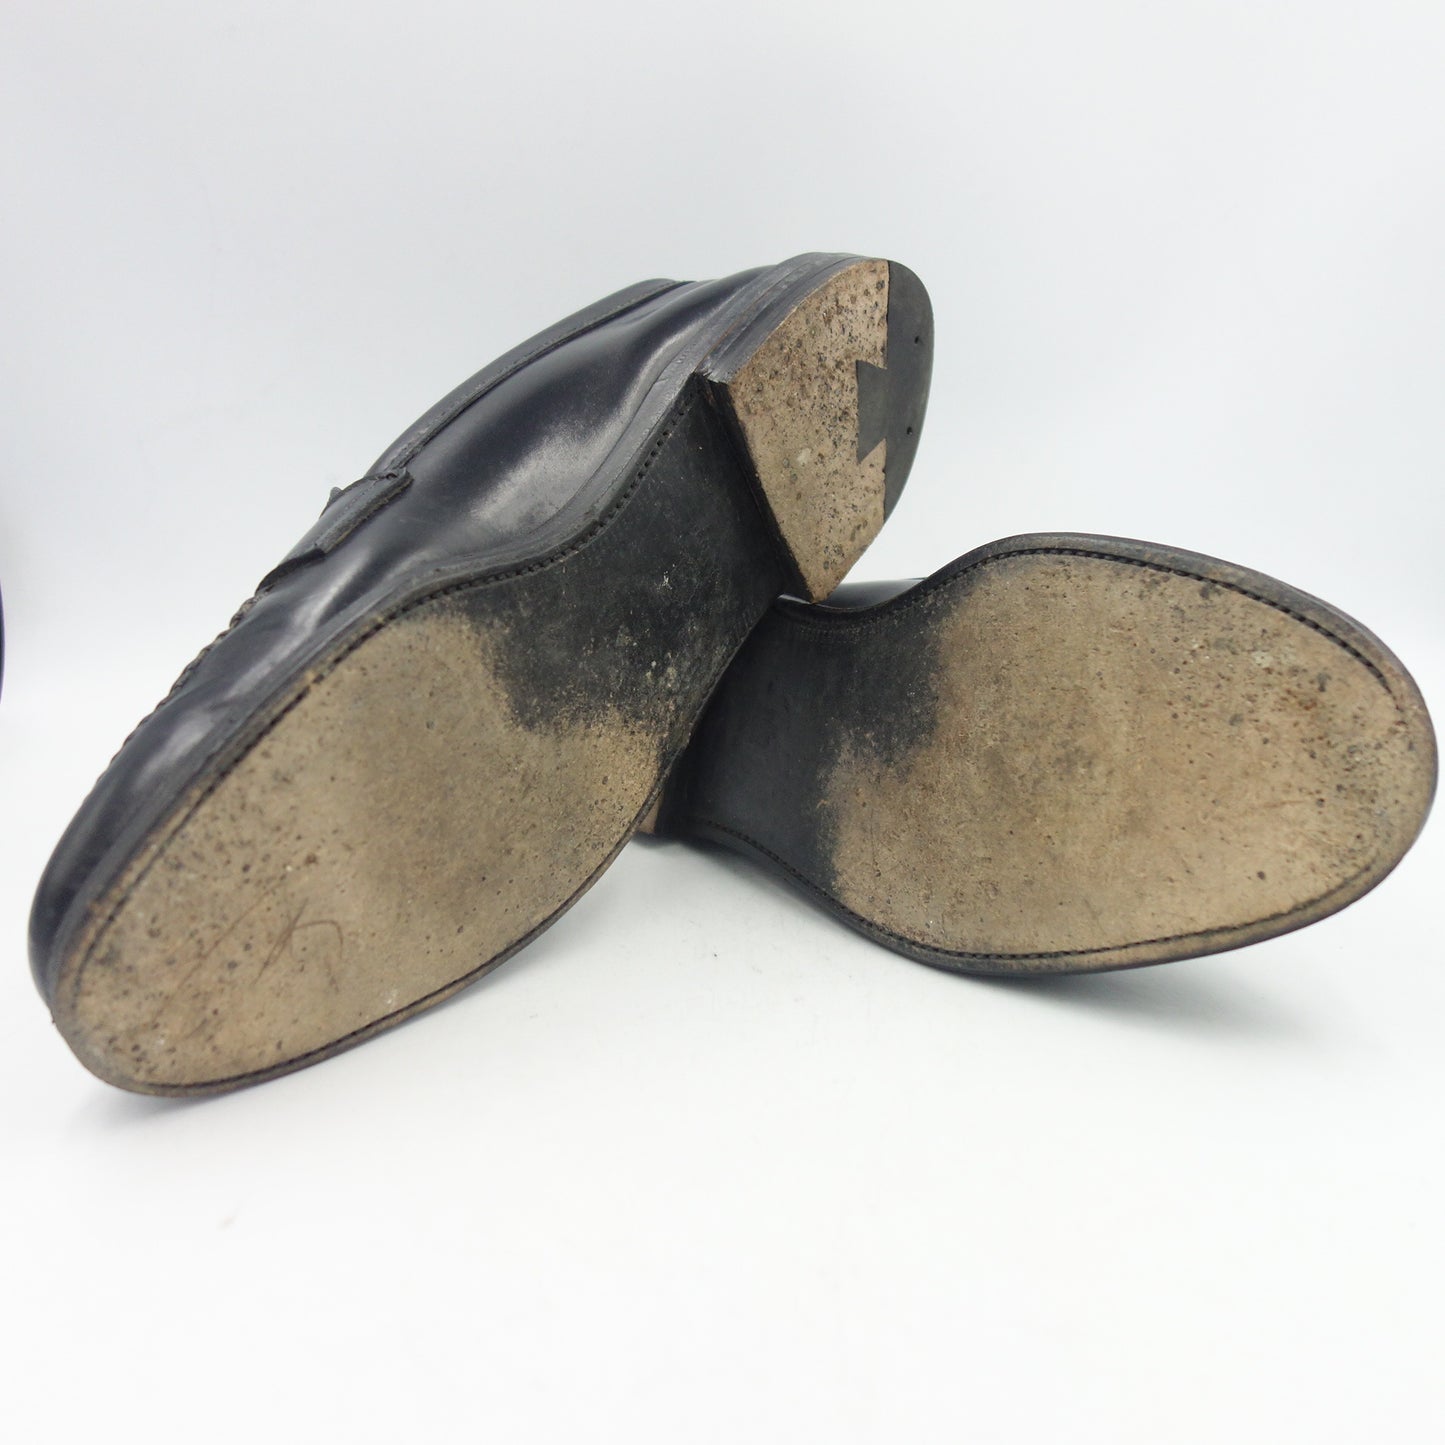 二手 ◆Alden 皮鞋 987 Cordovan Penny 乐福鞋 男士 黑色 US10.5D Alden [LA] 